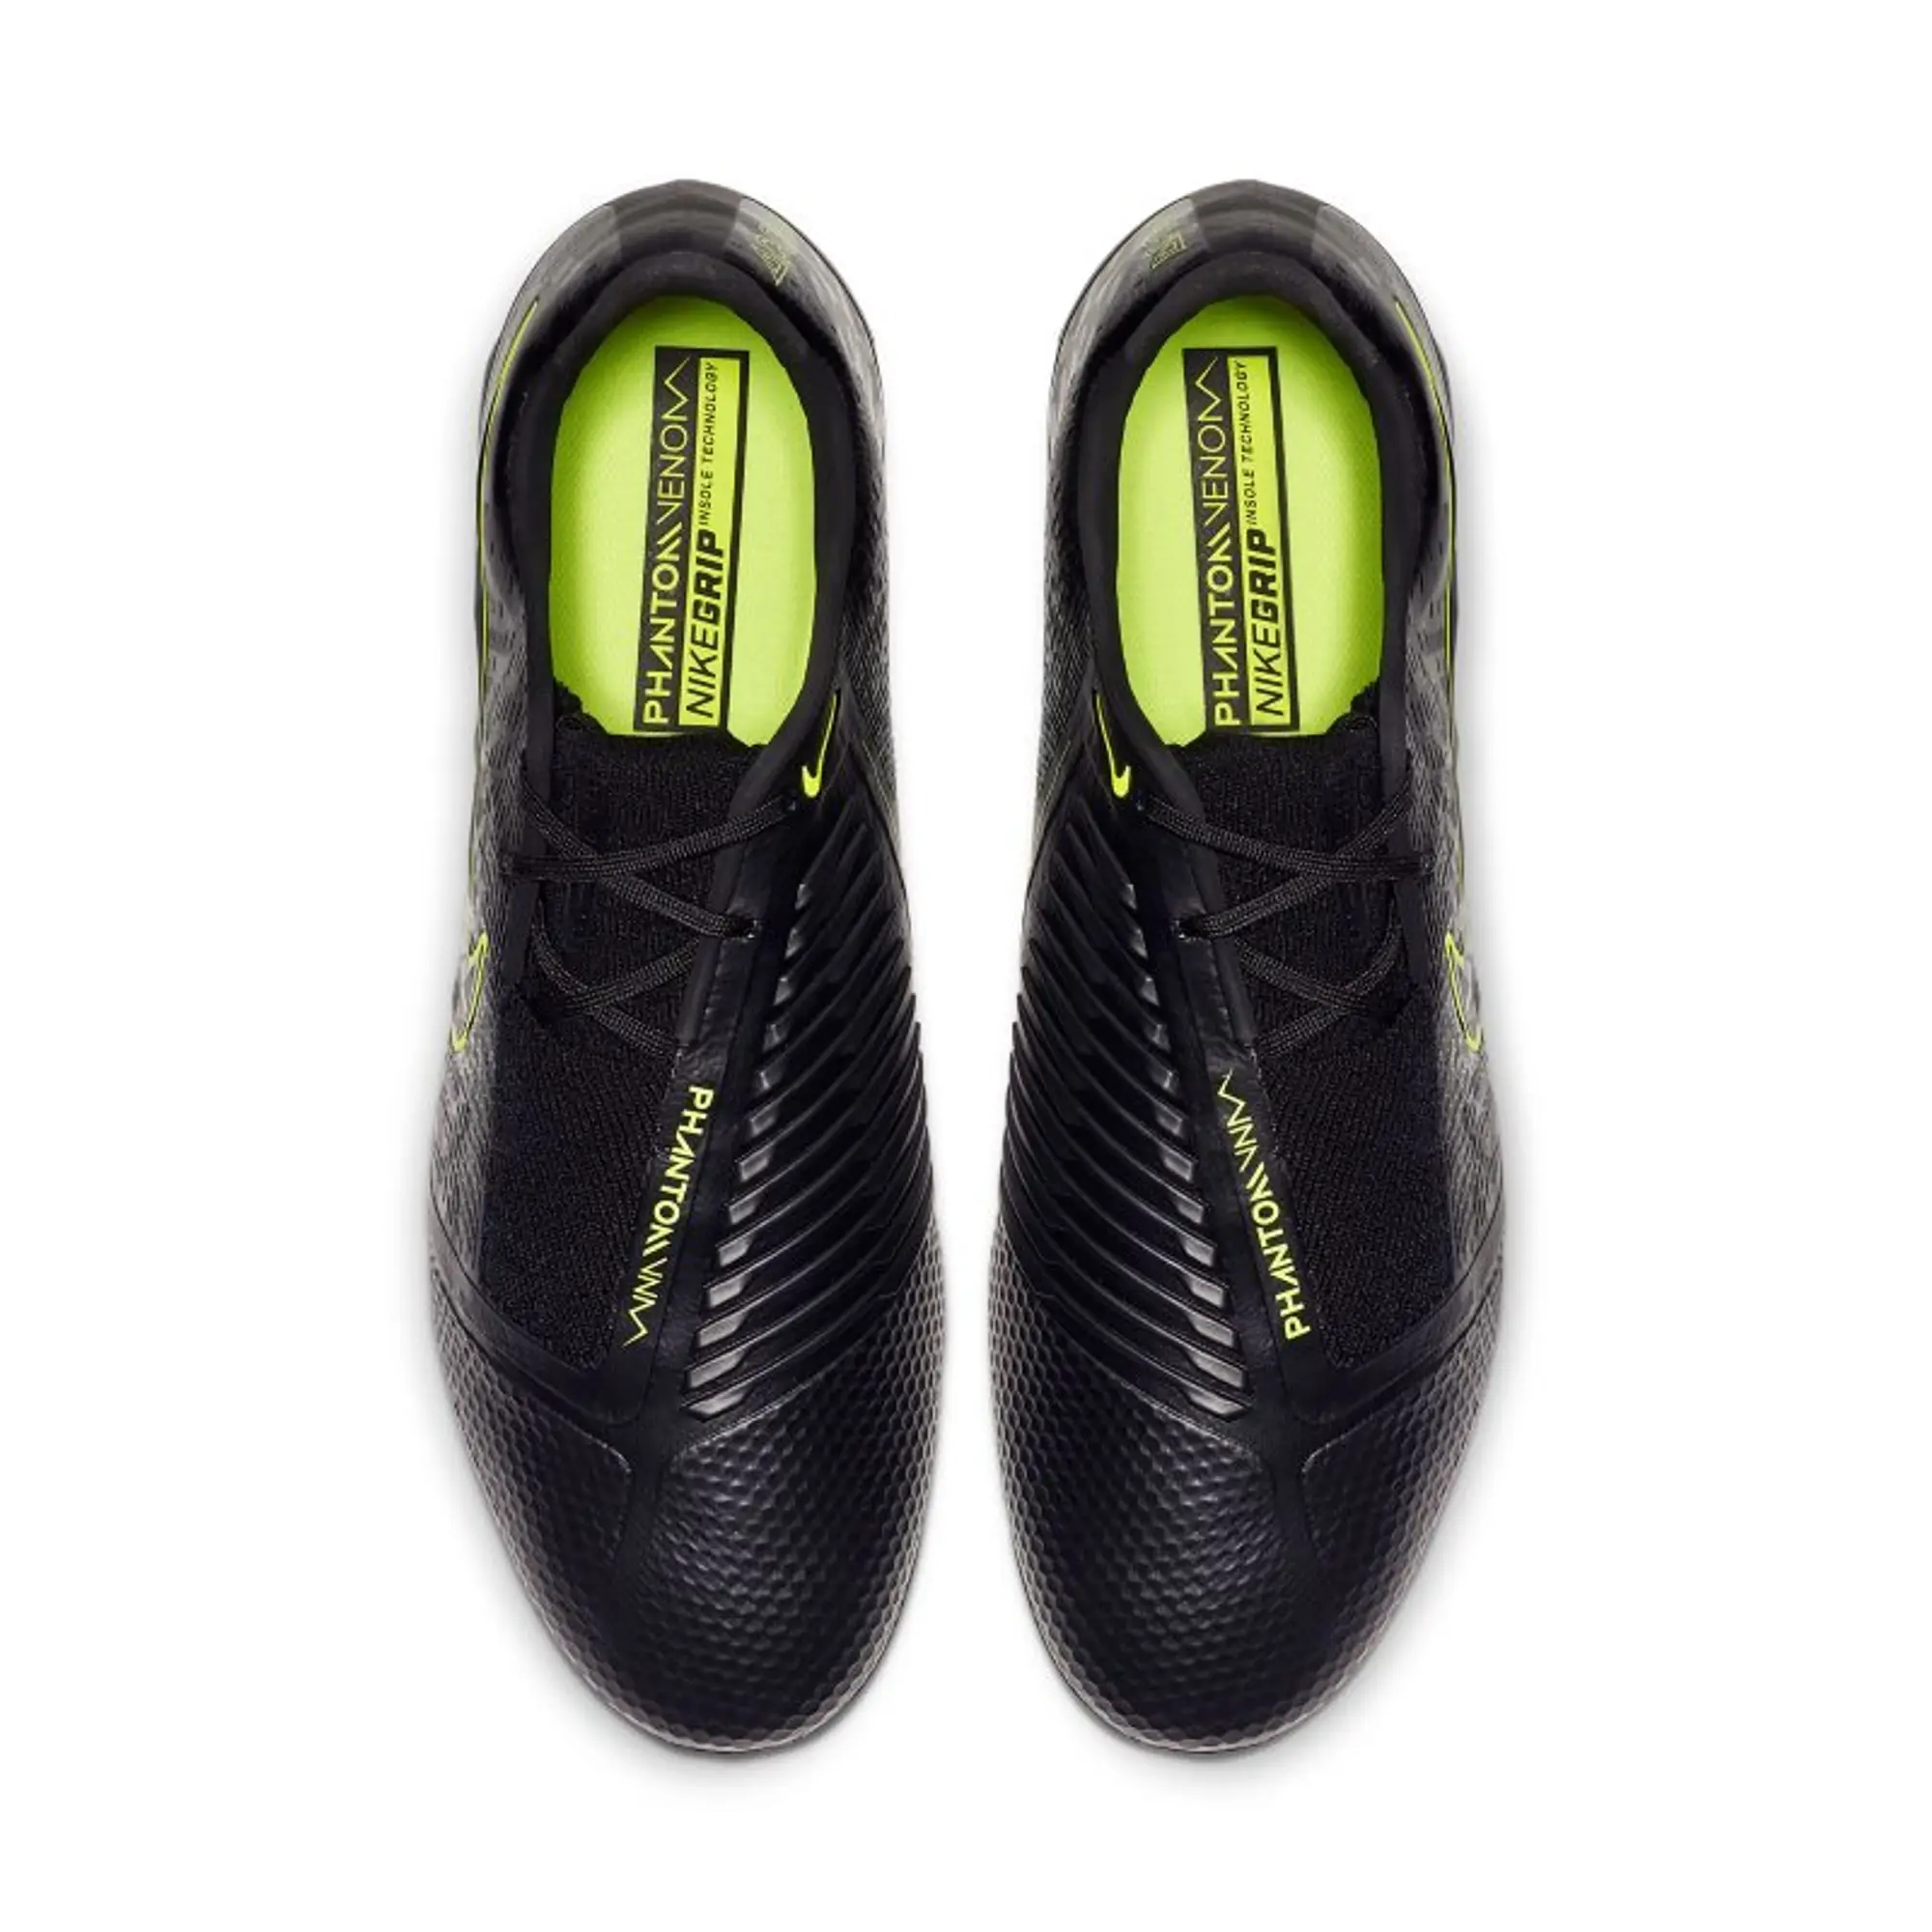 Nike Venom Elite FG Football Boots